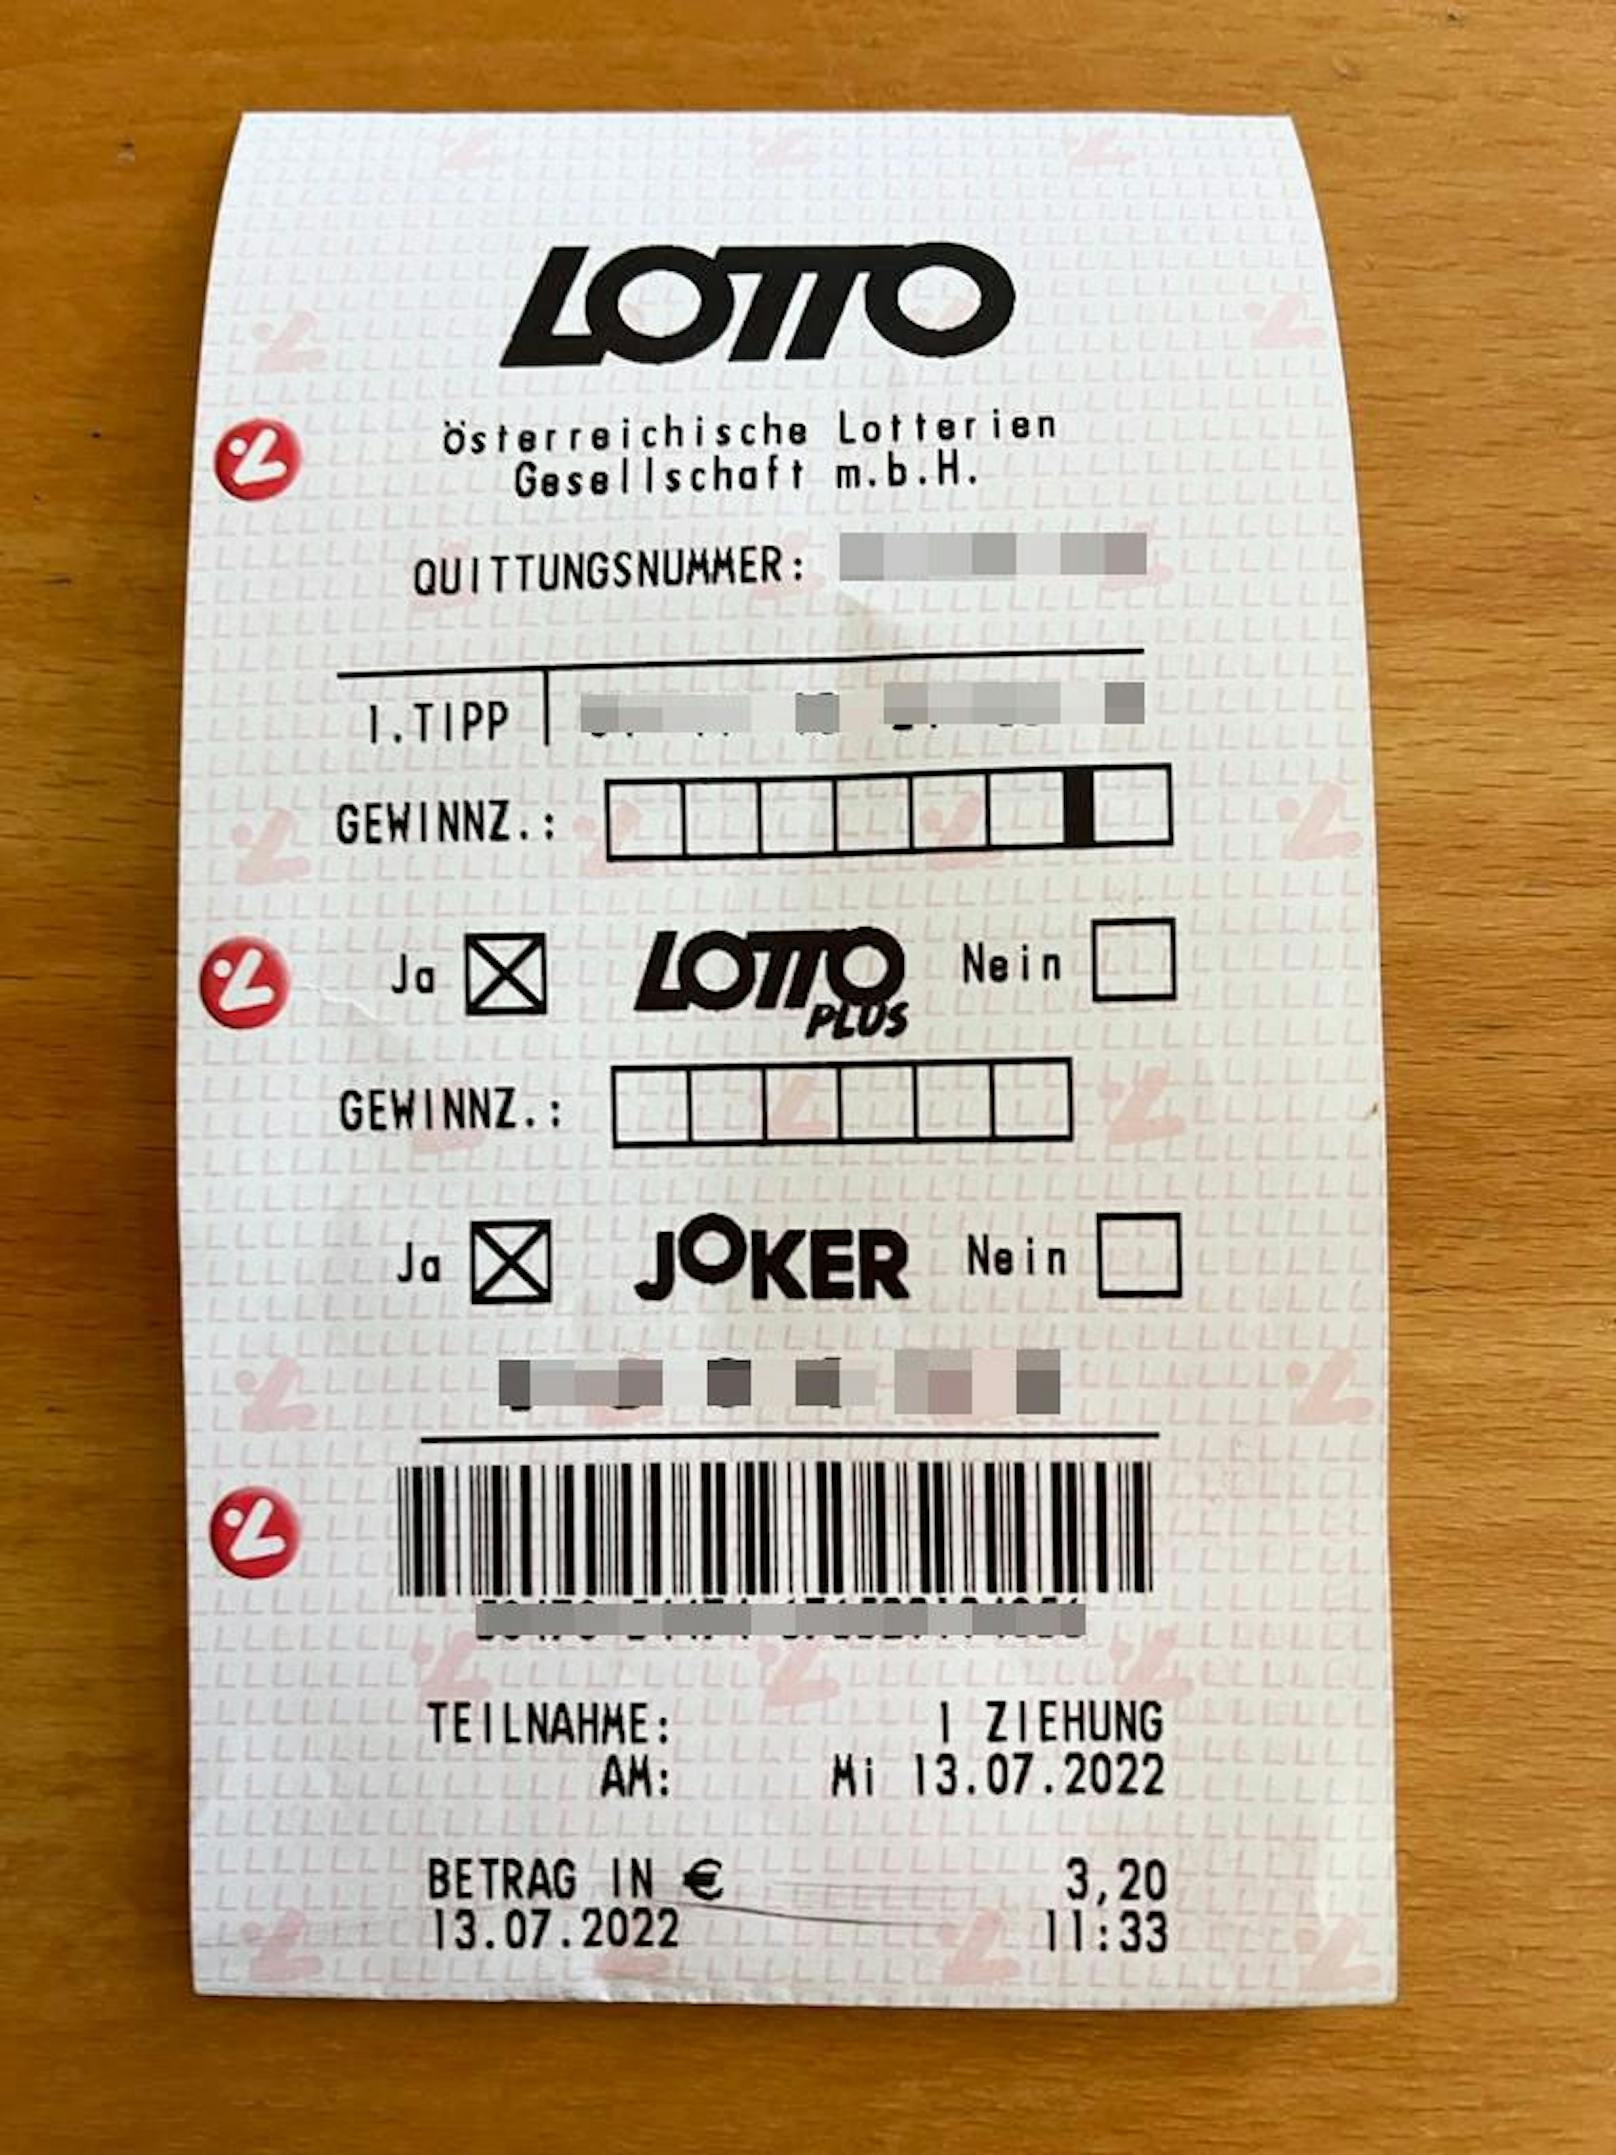 Ein Lotto-Tipp mit LottoPlus und Joker: 3,20 Euro